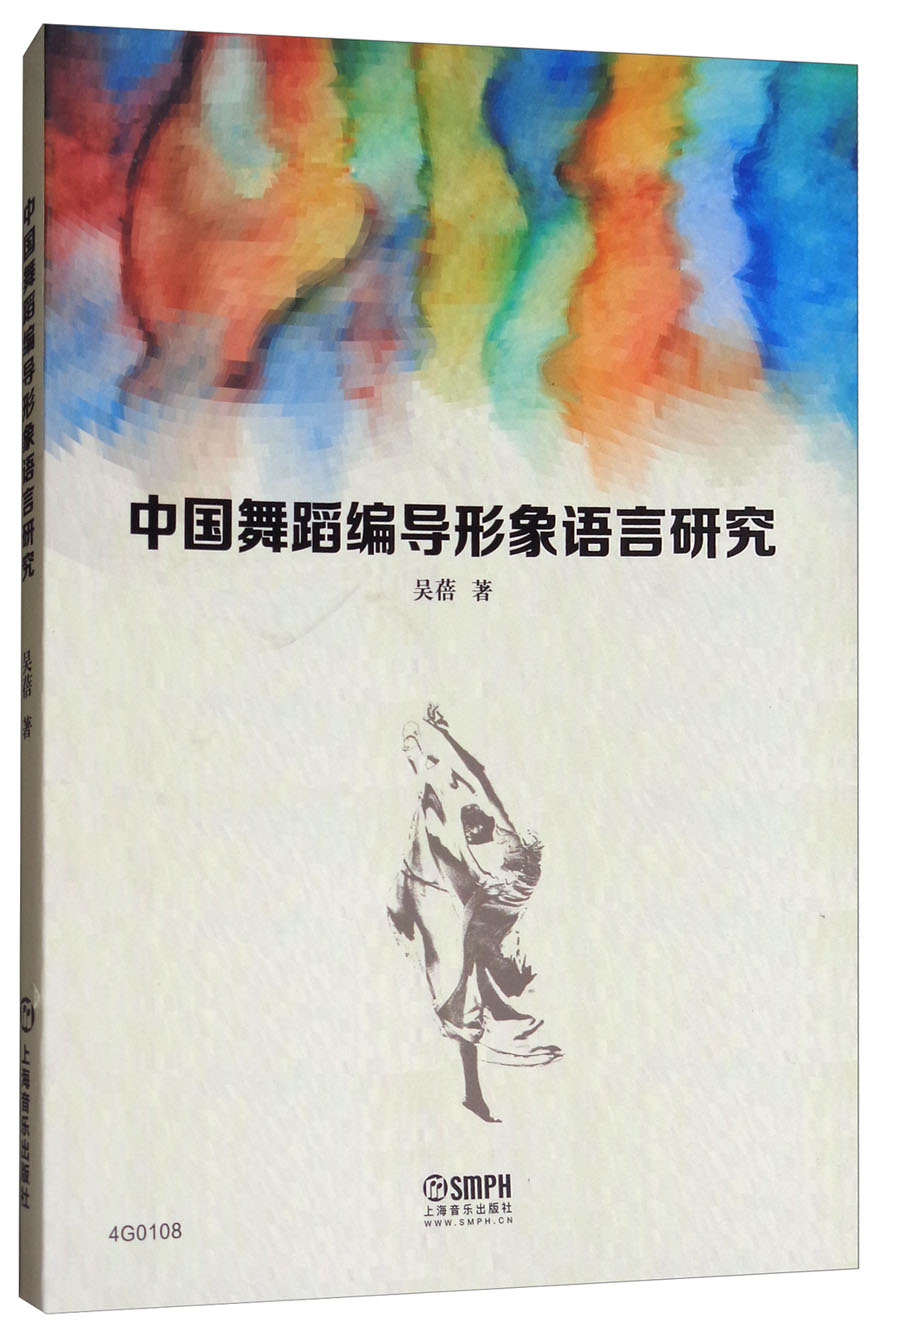 中国舞蹈编导形象语言研究 txt格式下载